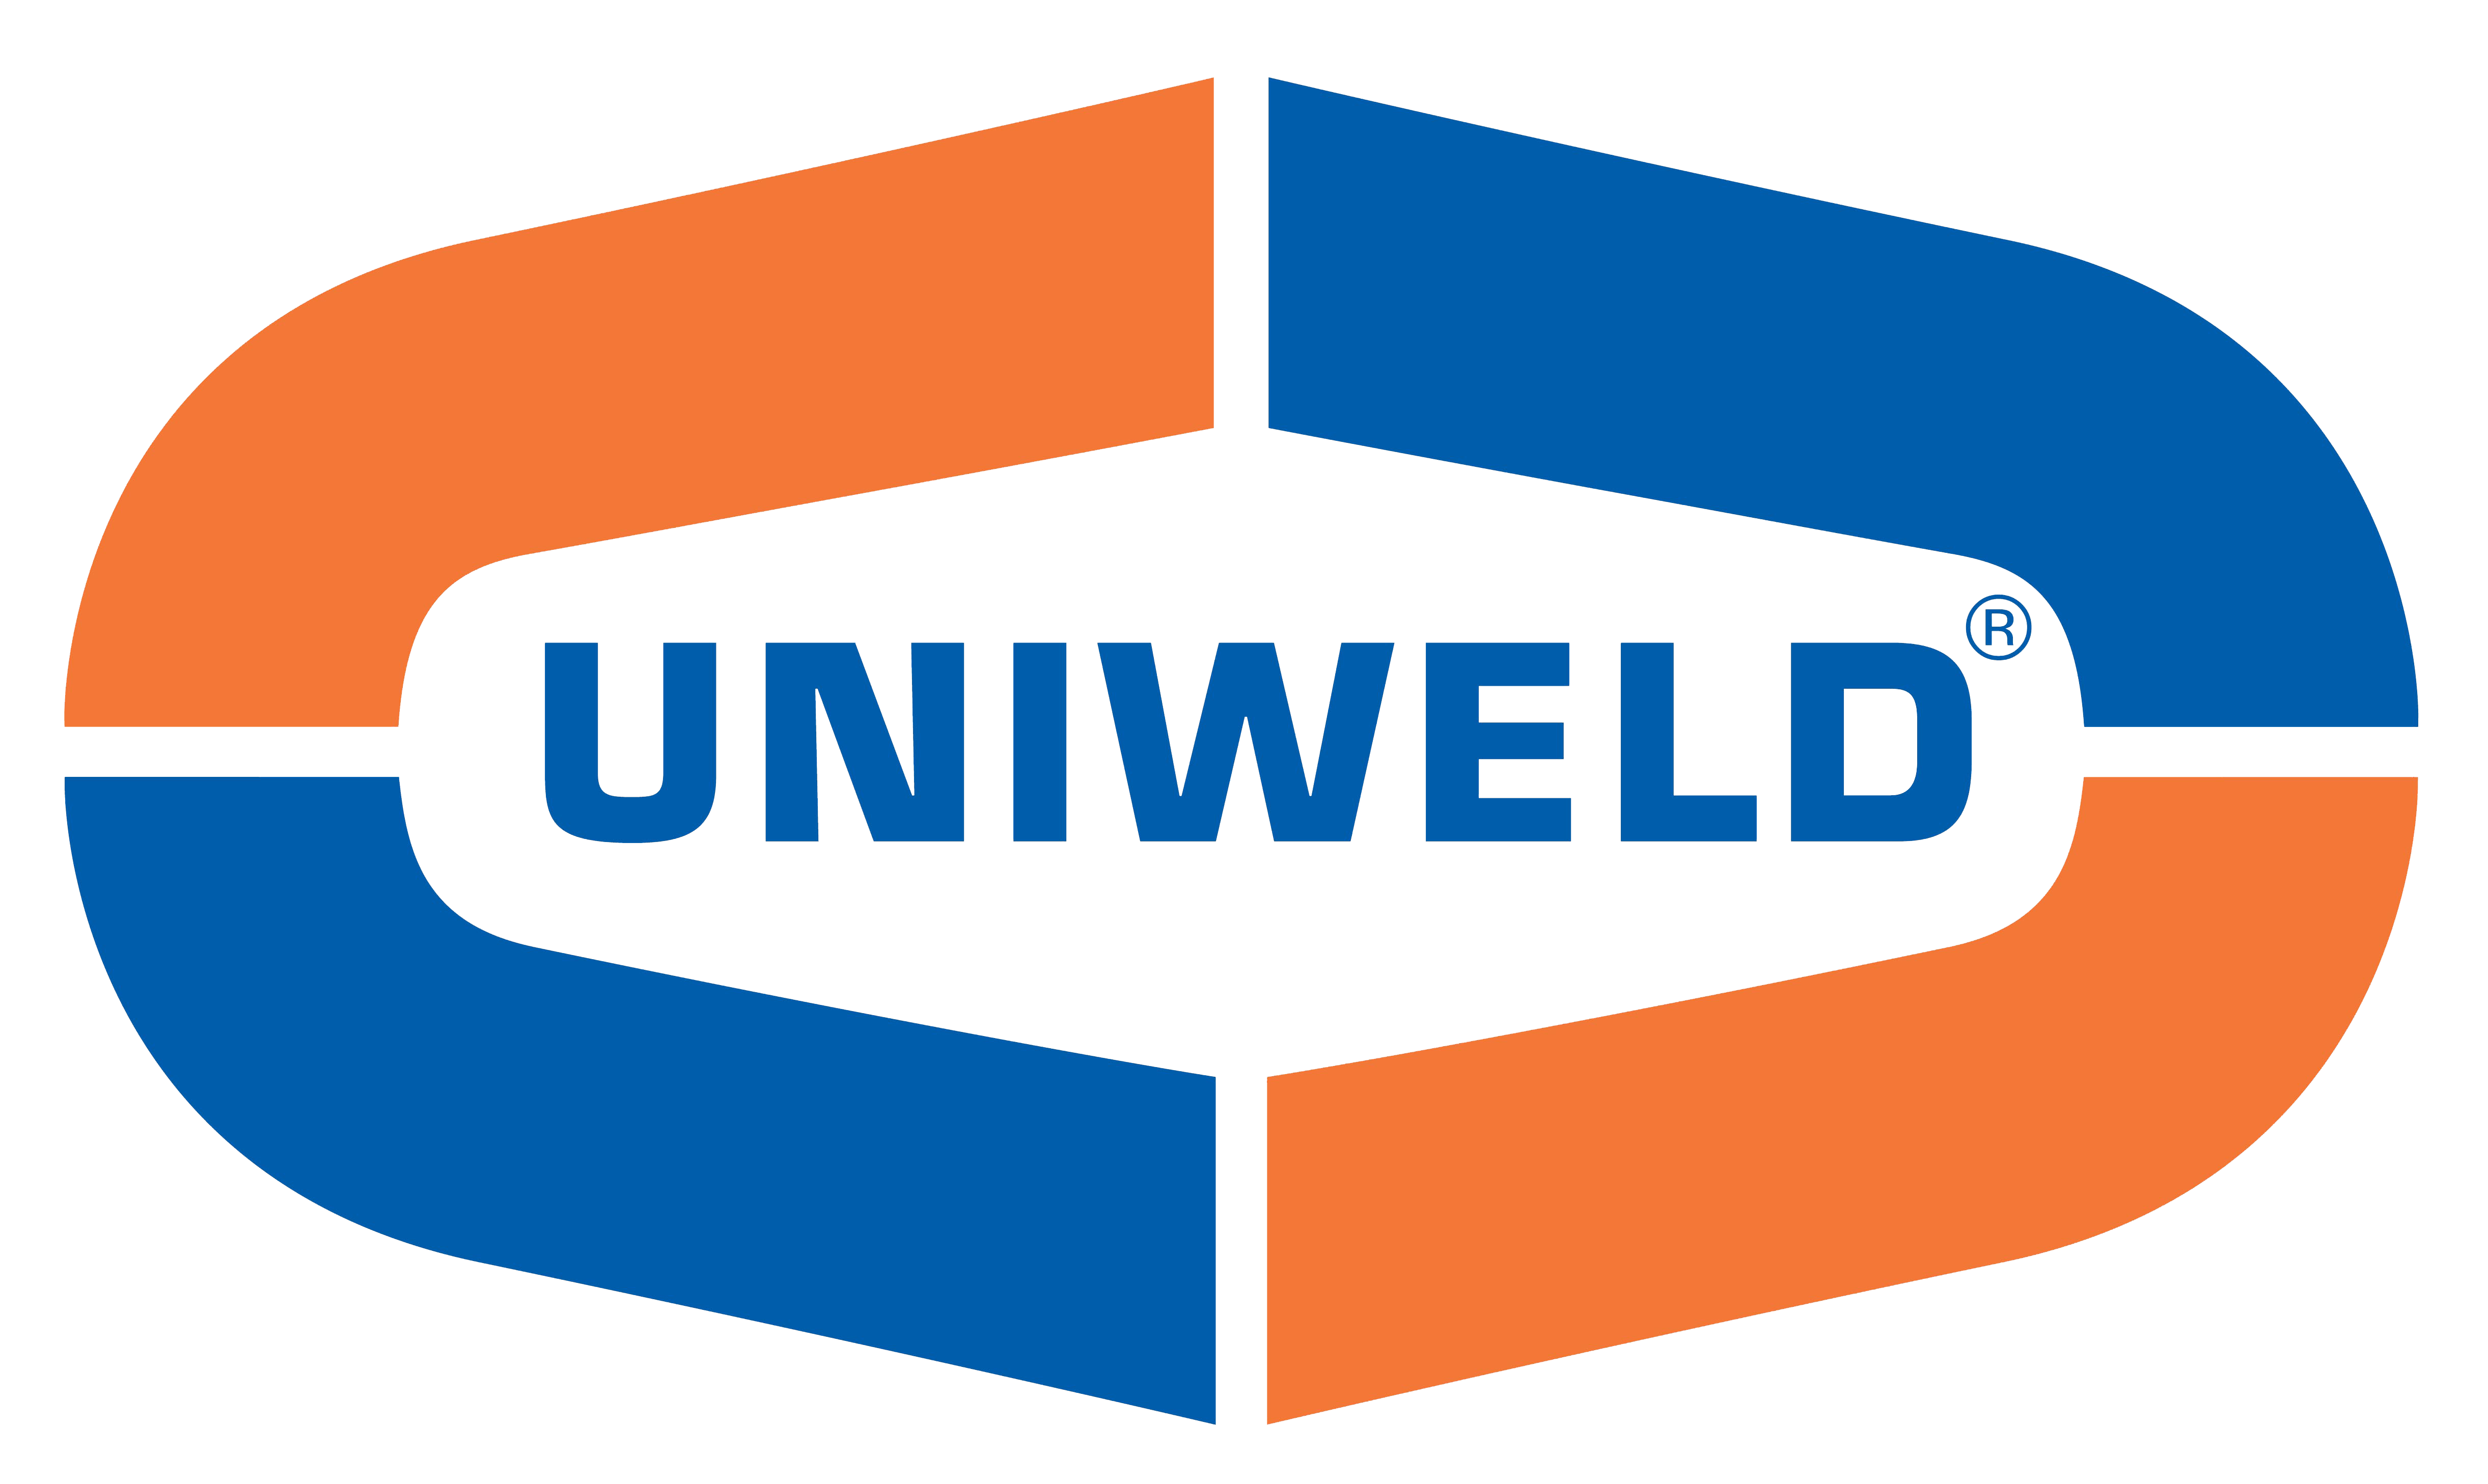 Uniweld Products, Inc.